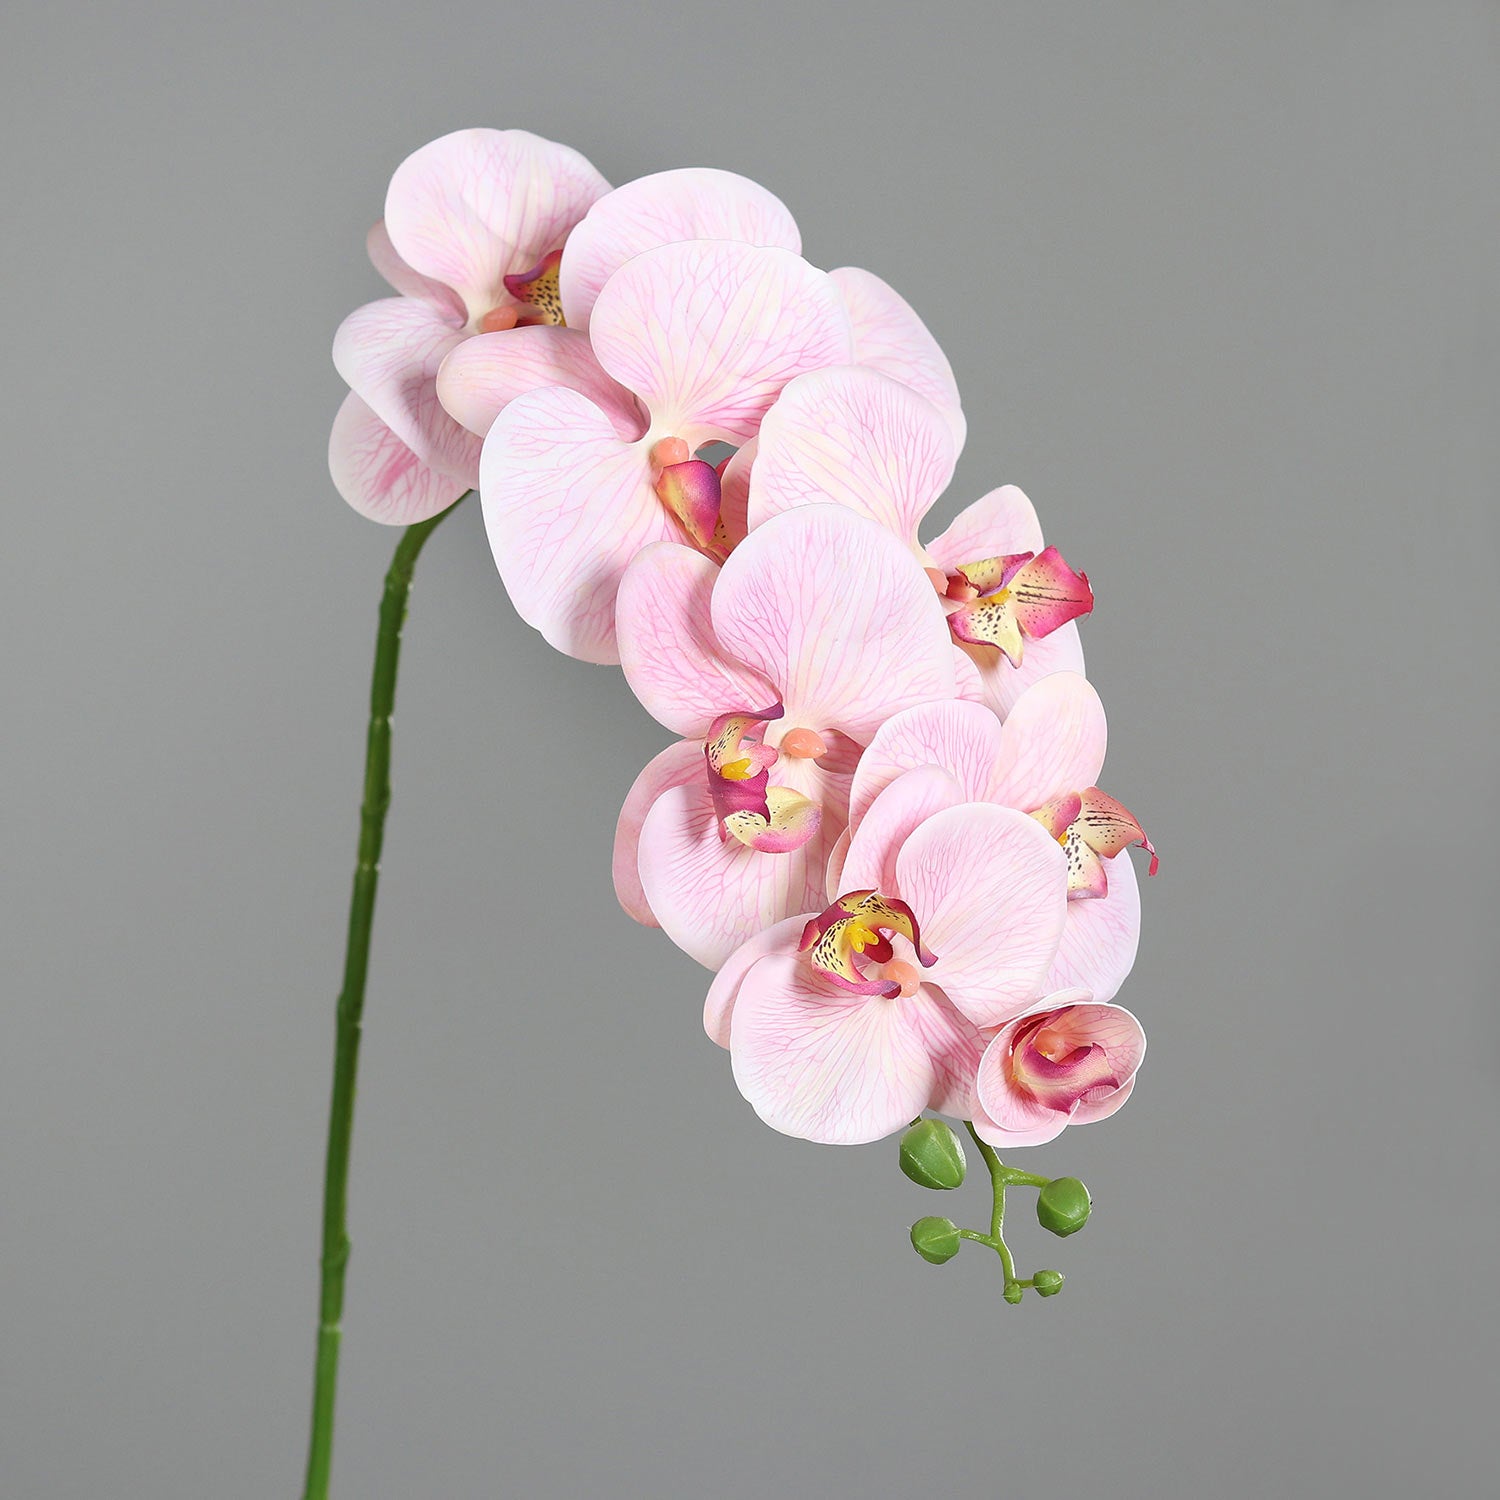 Pink színű, szálas orchidea művirág.